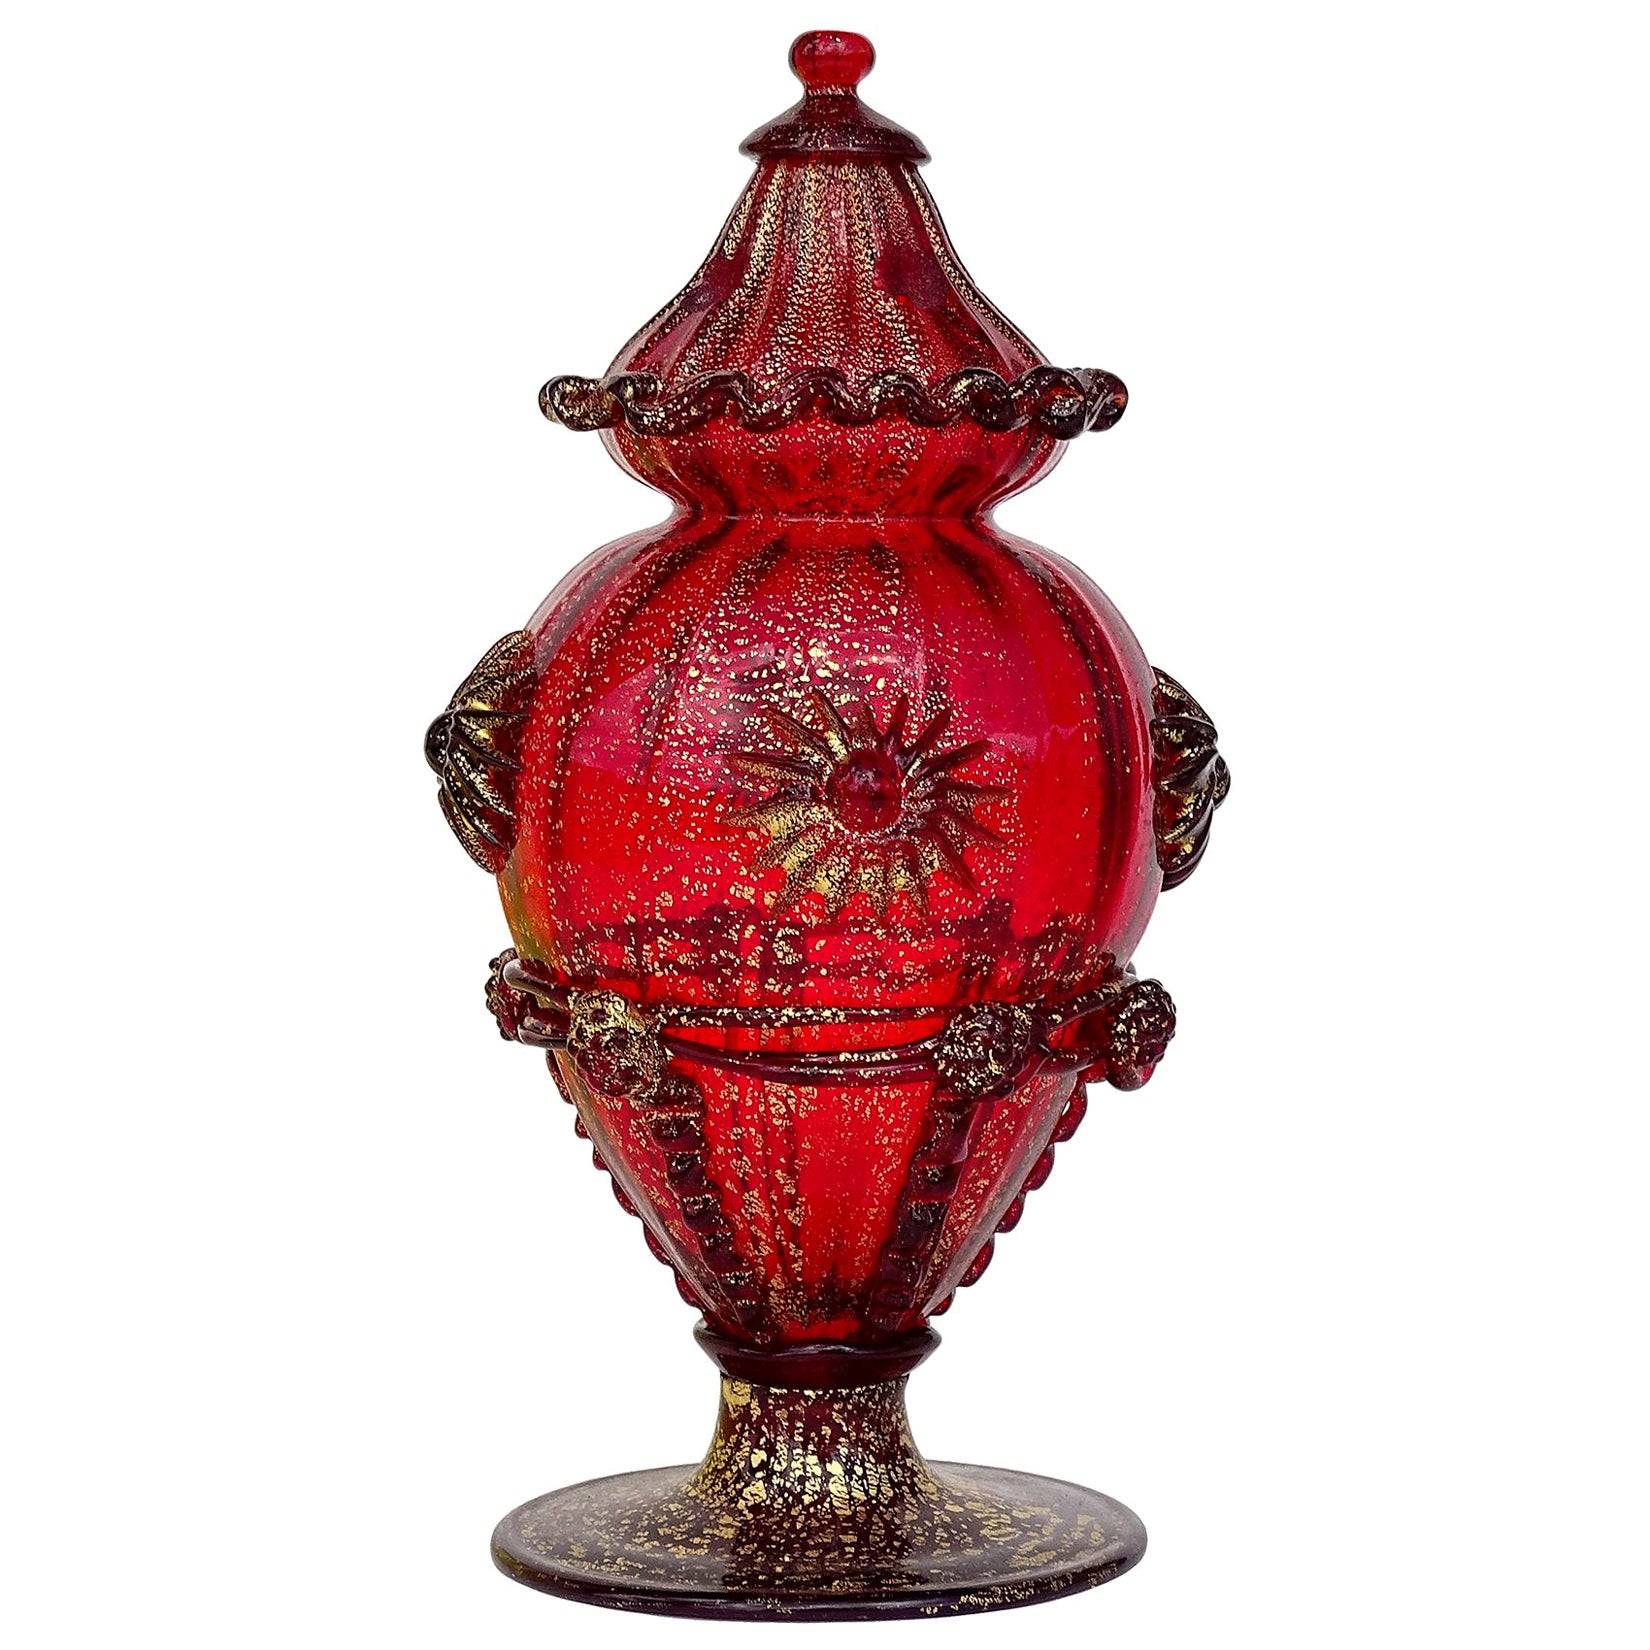 Antique Venetian Ruby Red Gold Flecks Italian Art Glass Ornate Table Object